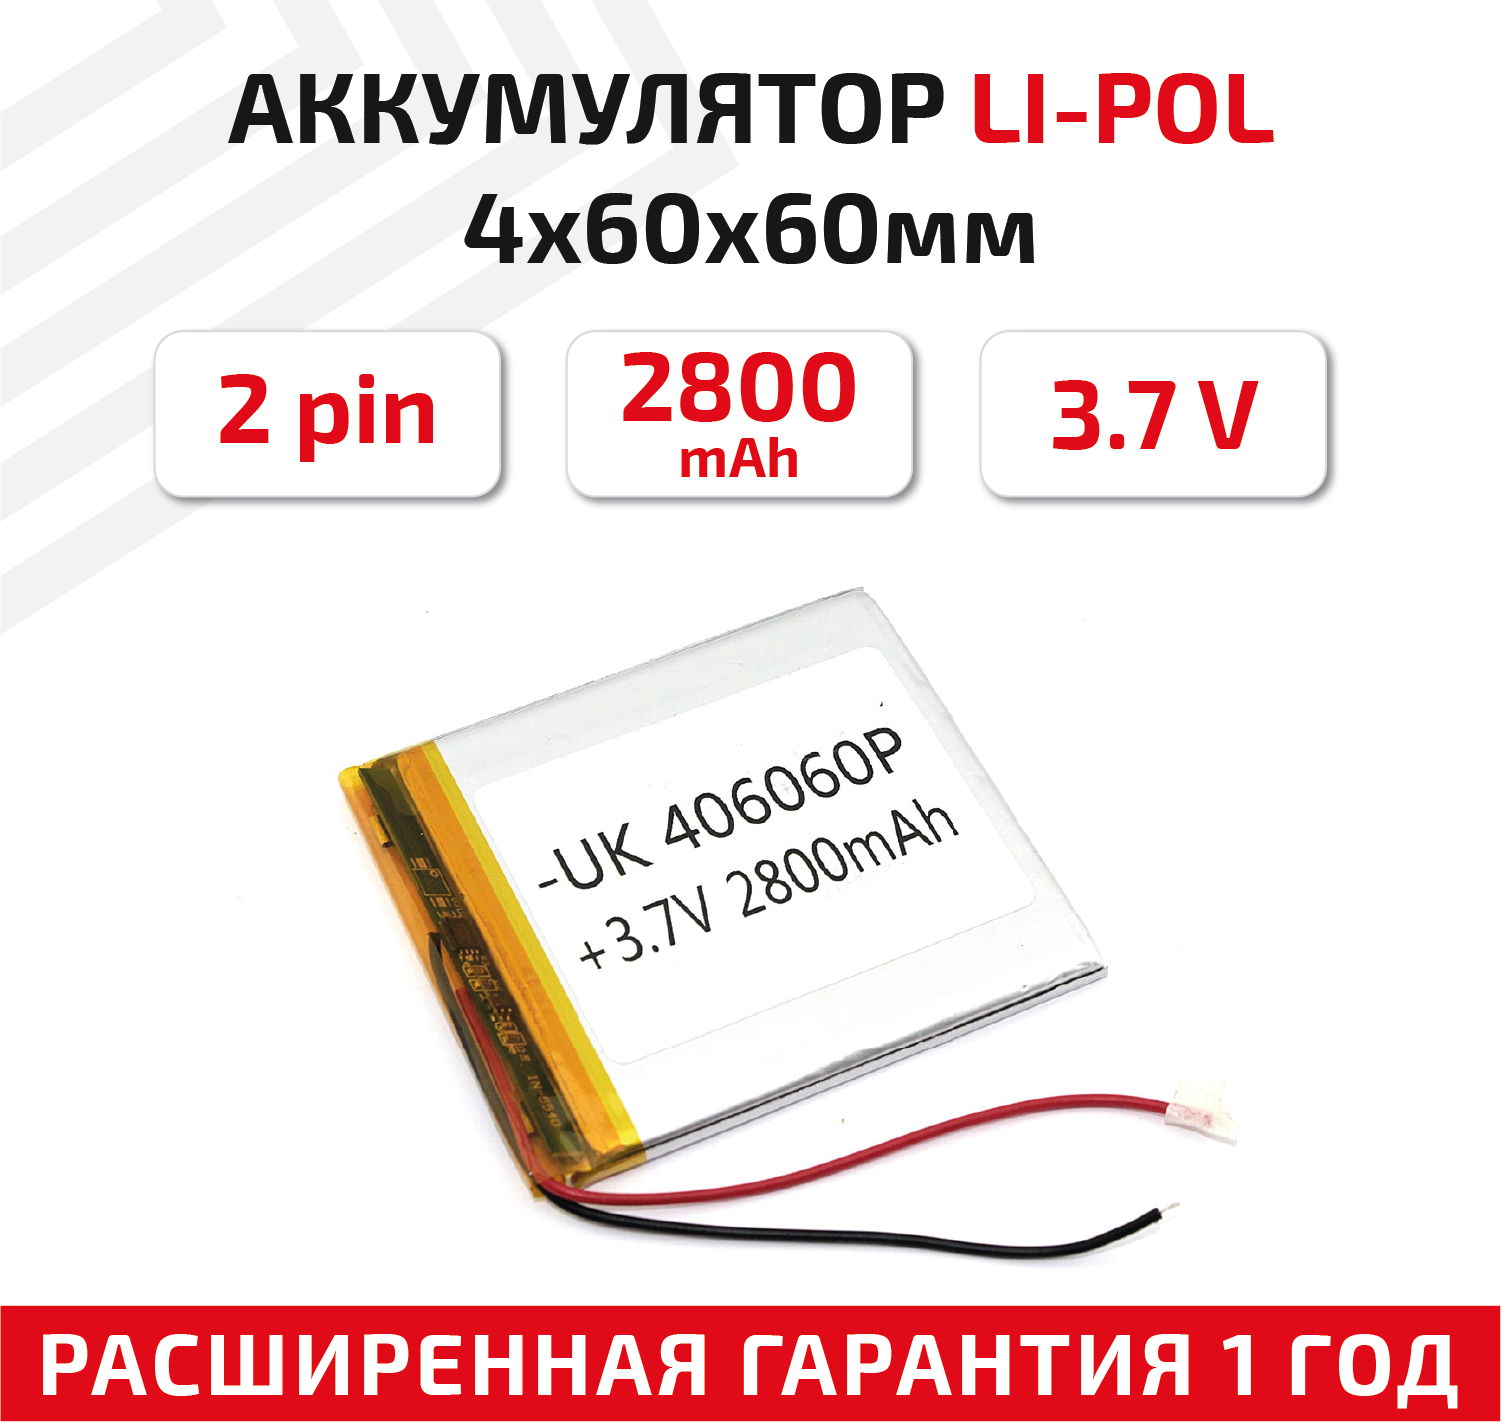 Универсальный аккумулятор (АКБ) для планшета, видеорегистратора и др, 4х60х60мм, 2800мАч, 3.7В, Li-Pol, 2pin (на 2 провода)